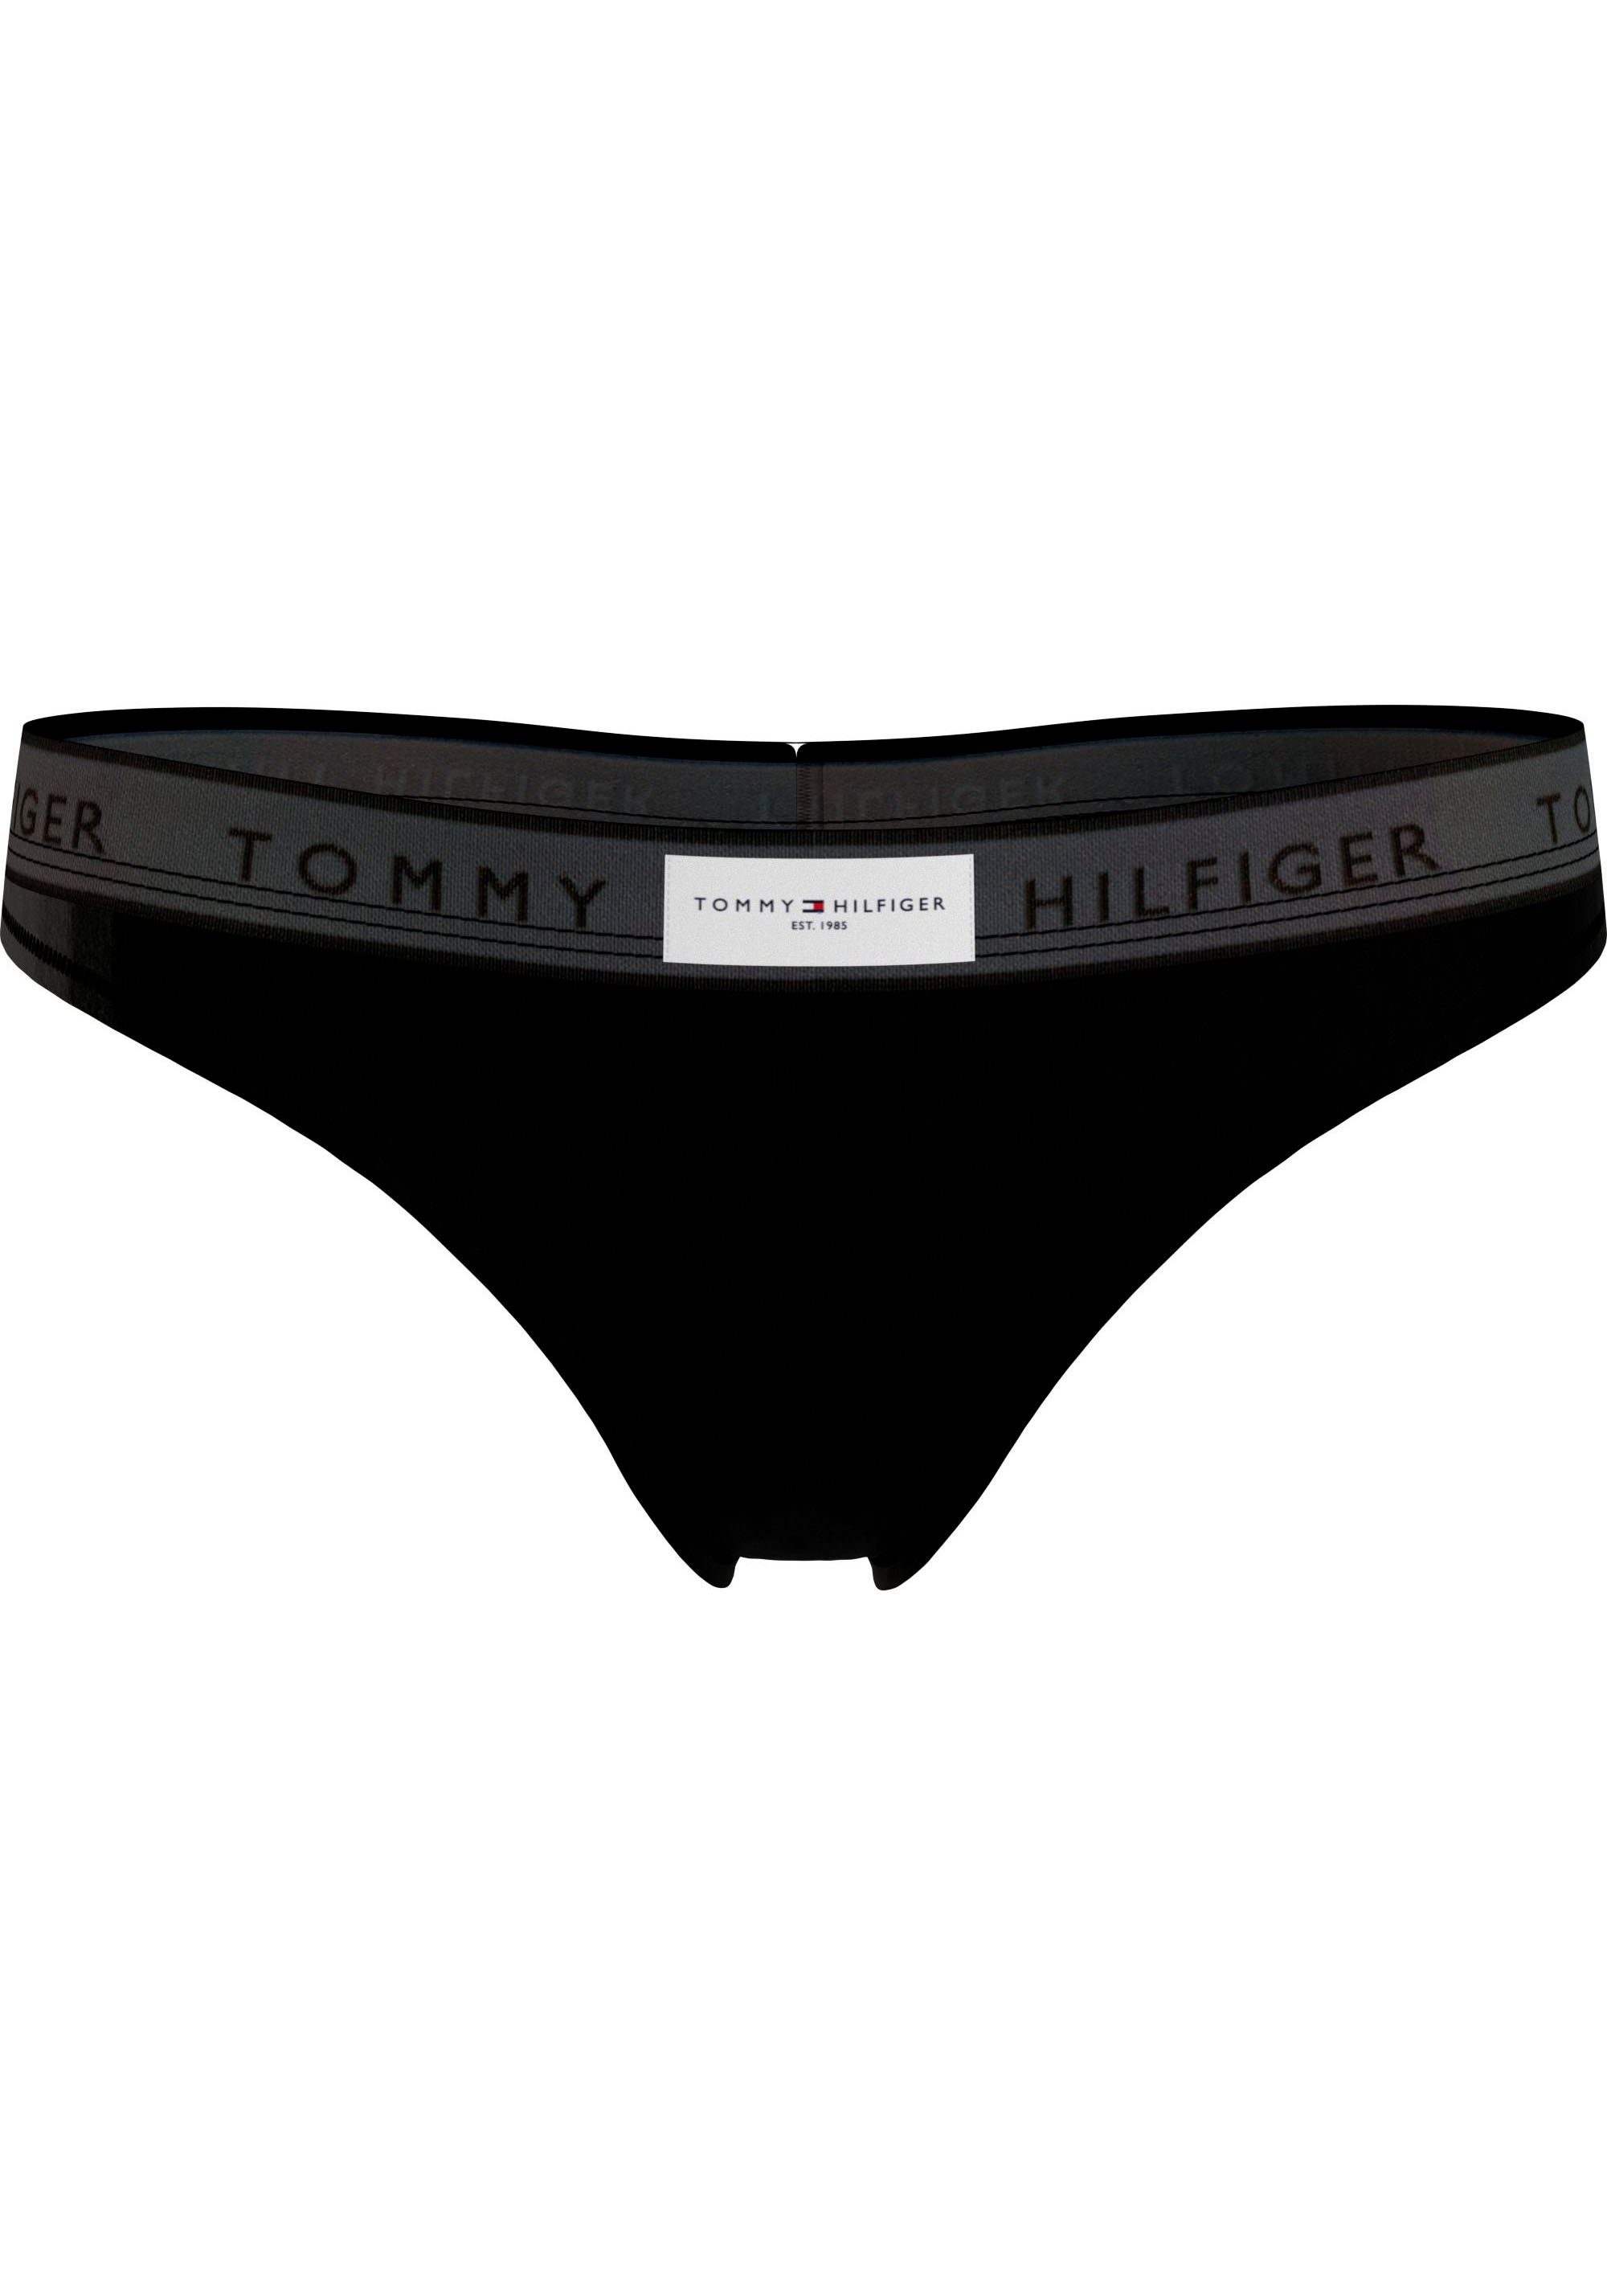 Tommy Hilfiger Underwear String THONG (EXT SIZES) mit Tommy Hilfiger Logobund Black